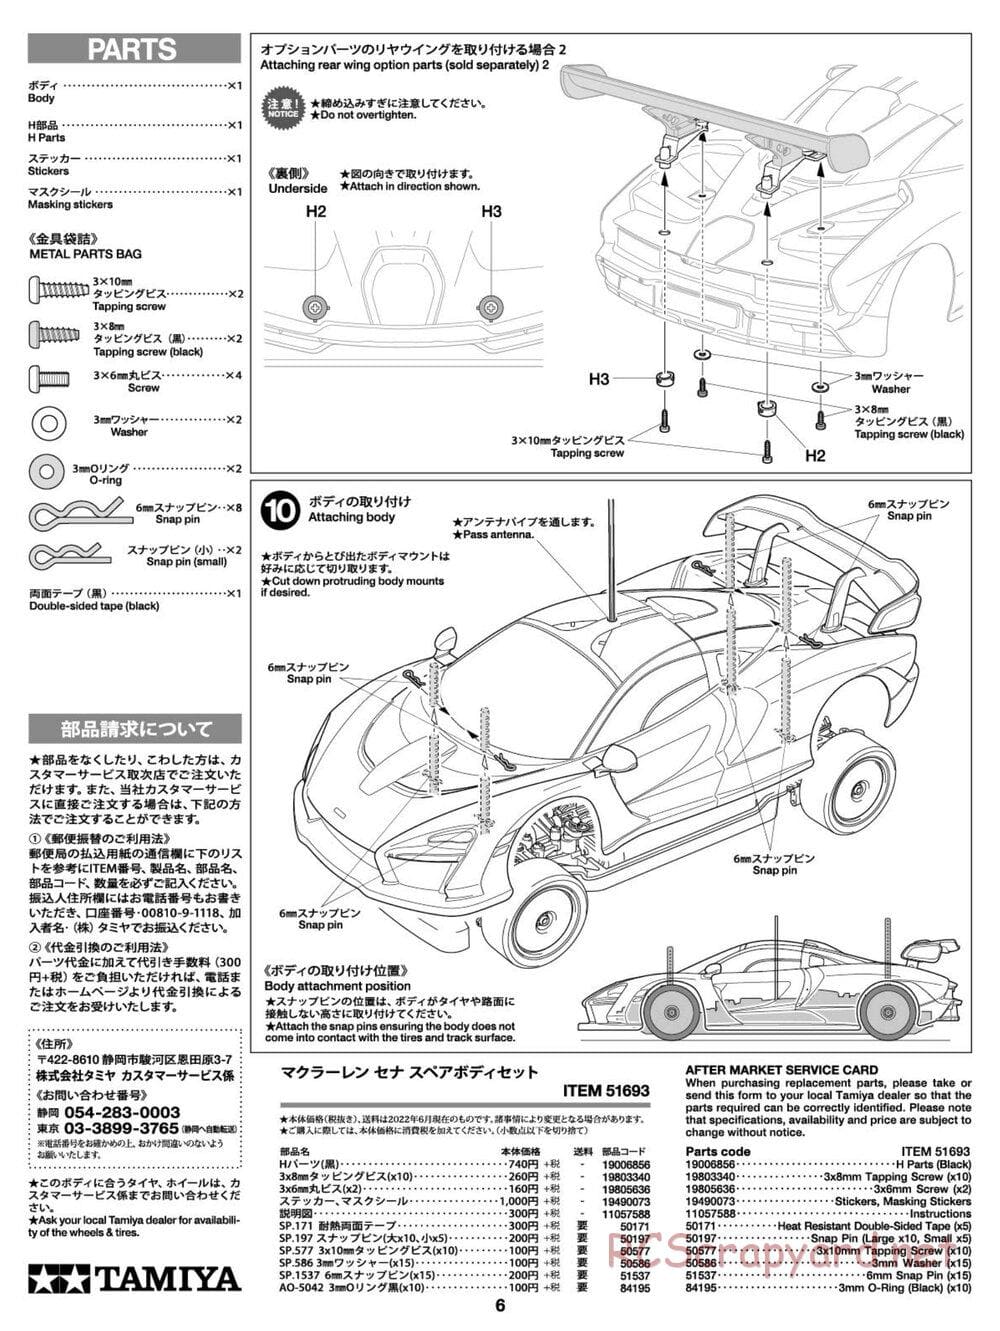 Tamiya - McLaren Senna - TT-02 Chassis - Body Manual - Page 6